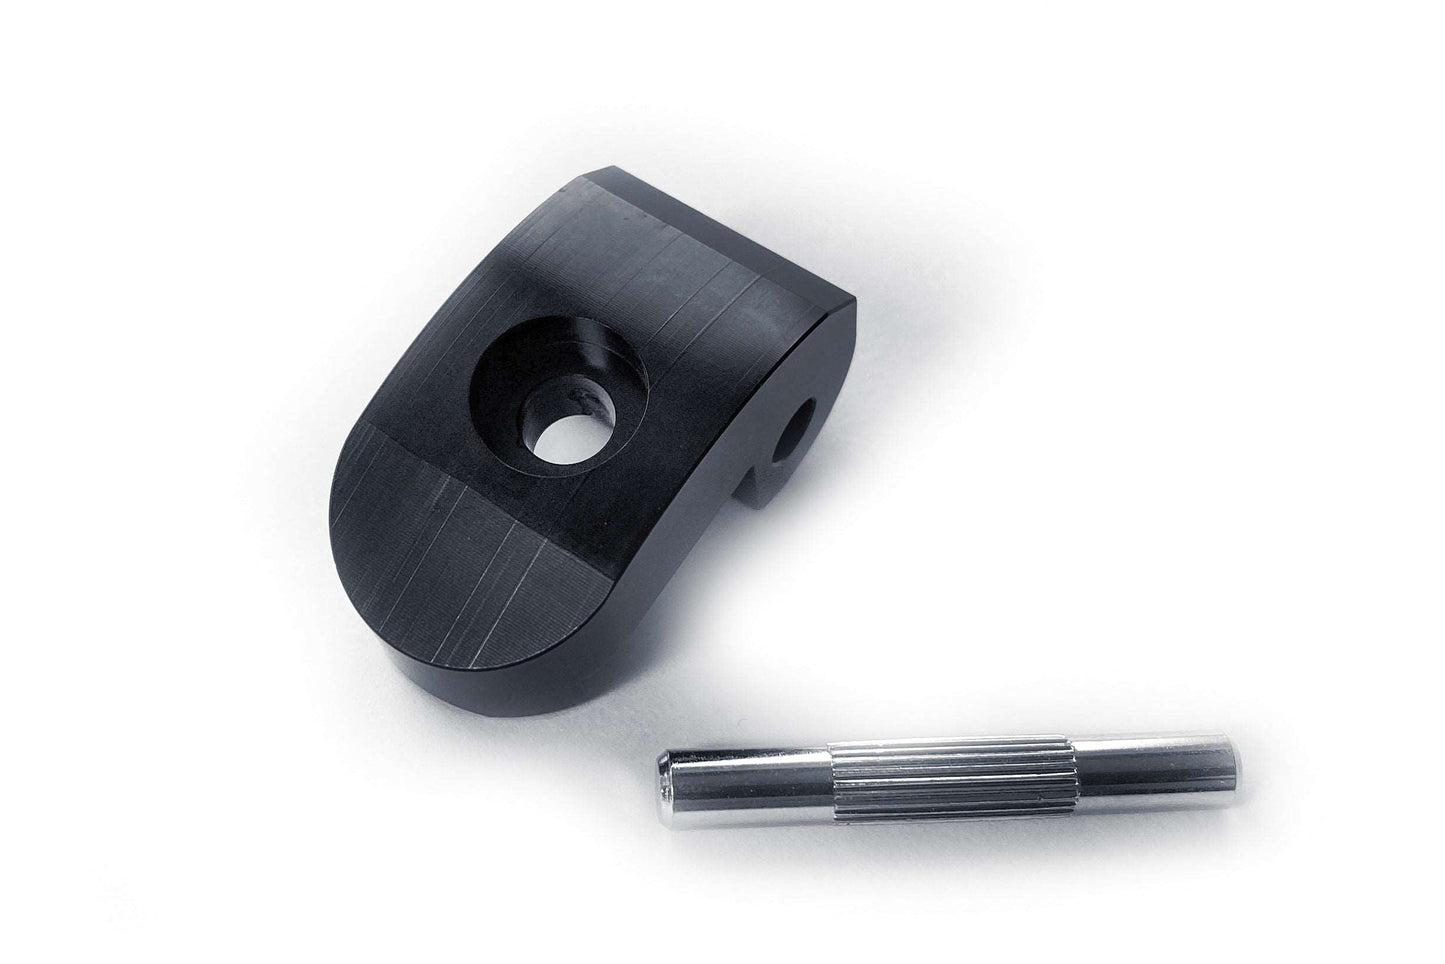 Låskrok vikmekanism Xiaomi | Reservdel för låskrok vikmekanism. Material av förstärkt stål i svart färg | Wheely Shop